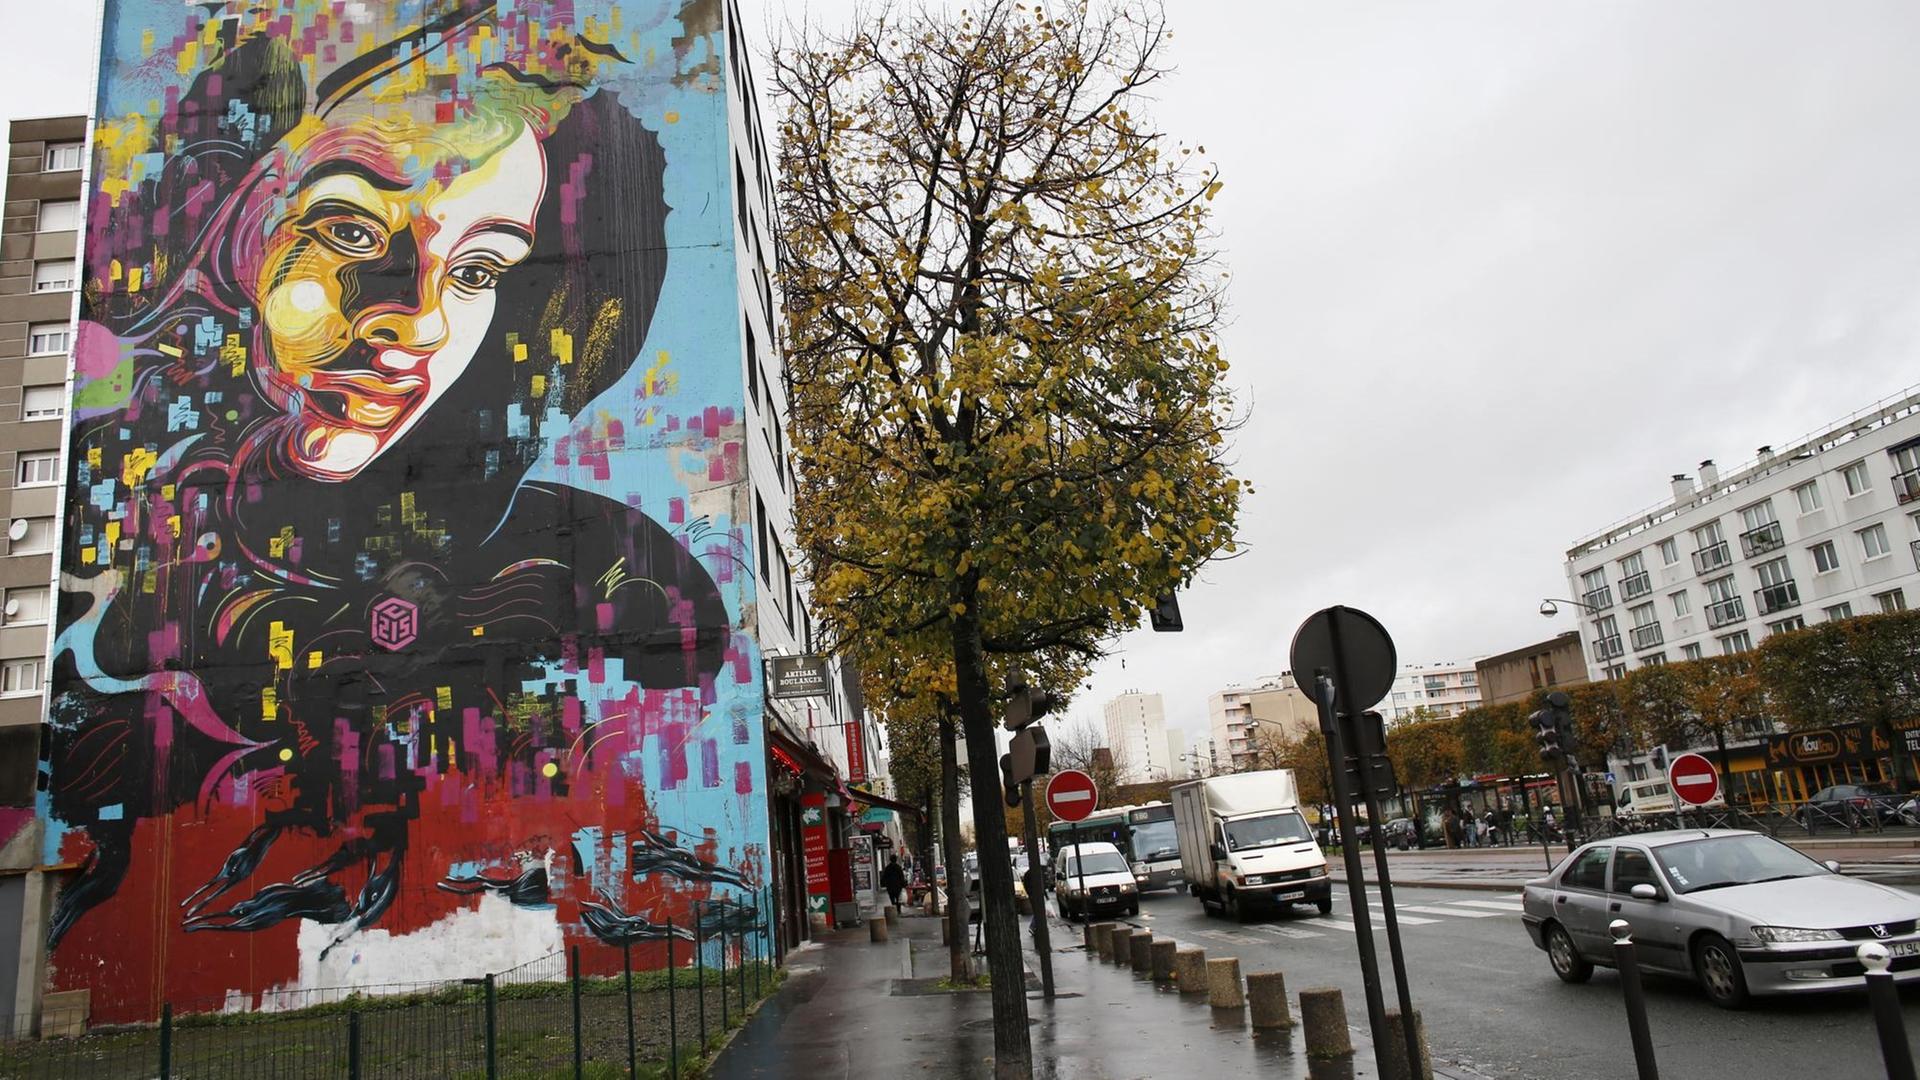 Der Vorort Vitry-sur-Seine, die Fassade eines Wohnblocks hat der Street Artist C215 mit einem großen Gesicht bemalt